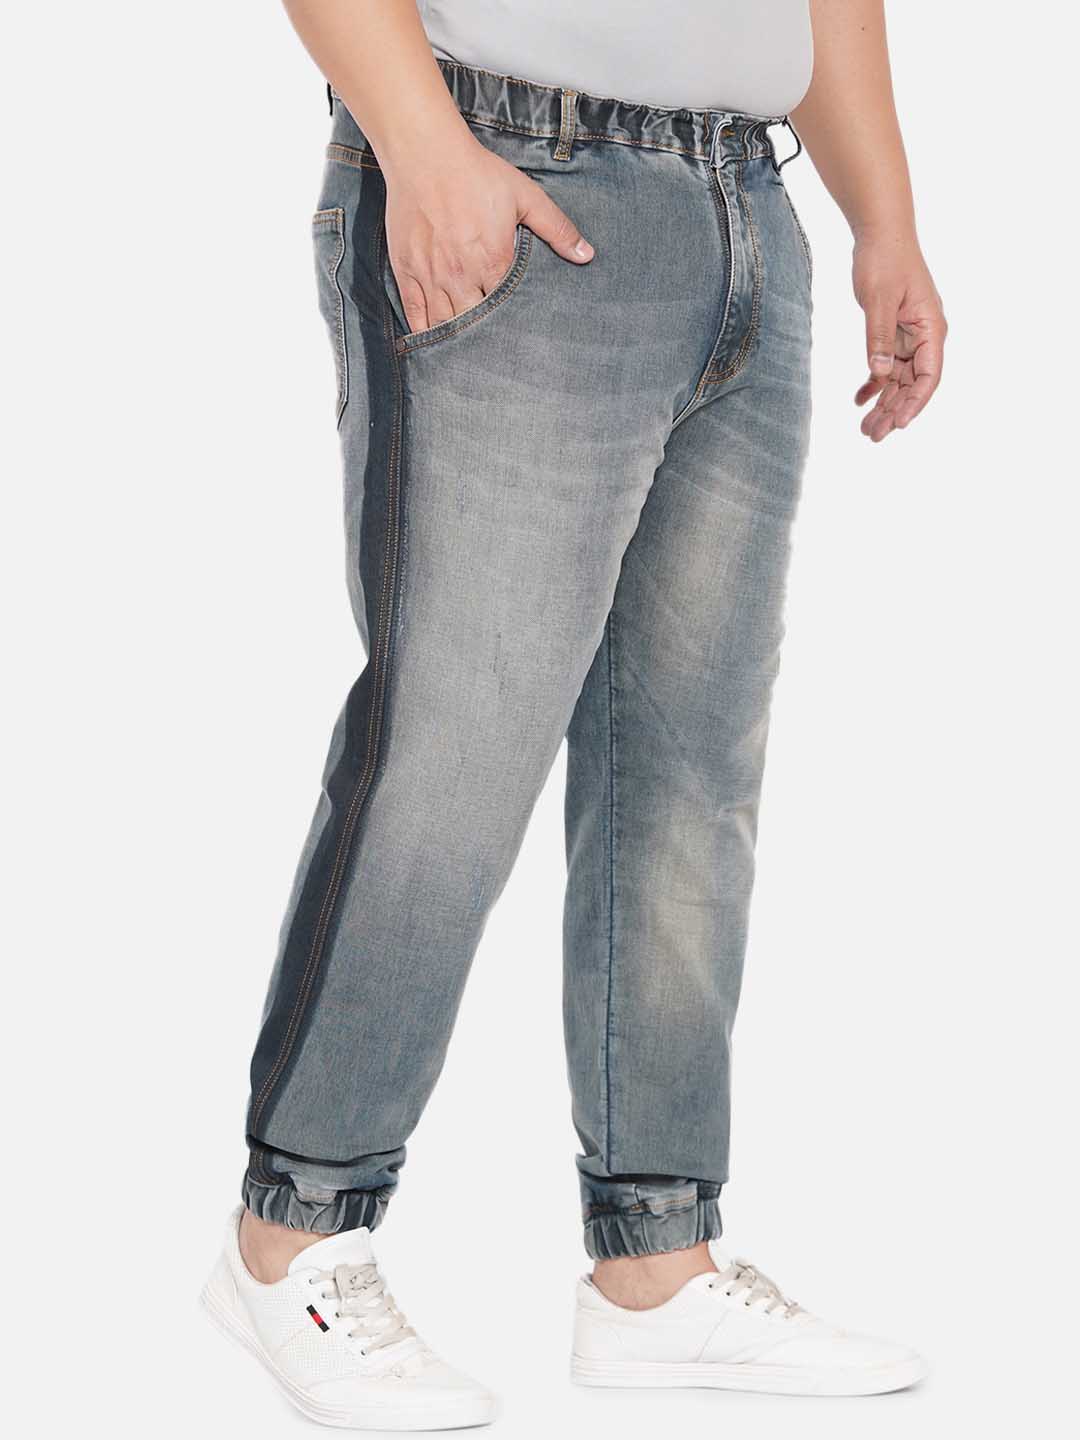 bottomwear/jeans/JPJ12231/jpj12231-3.jpg